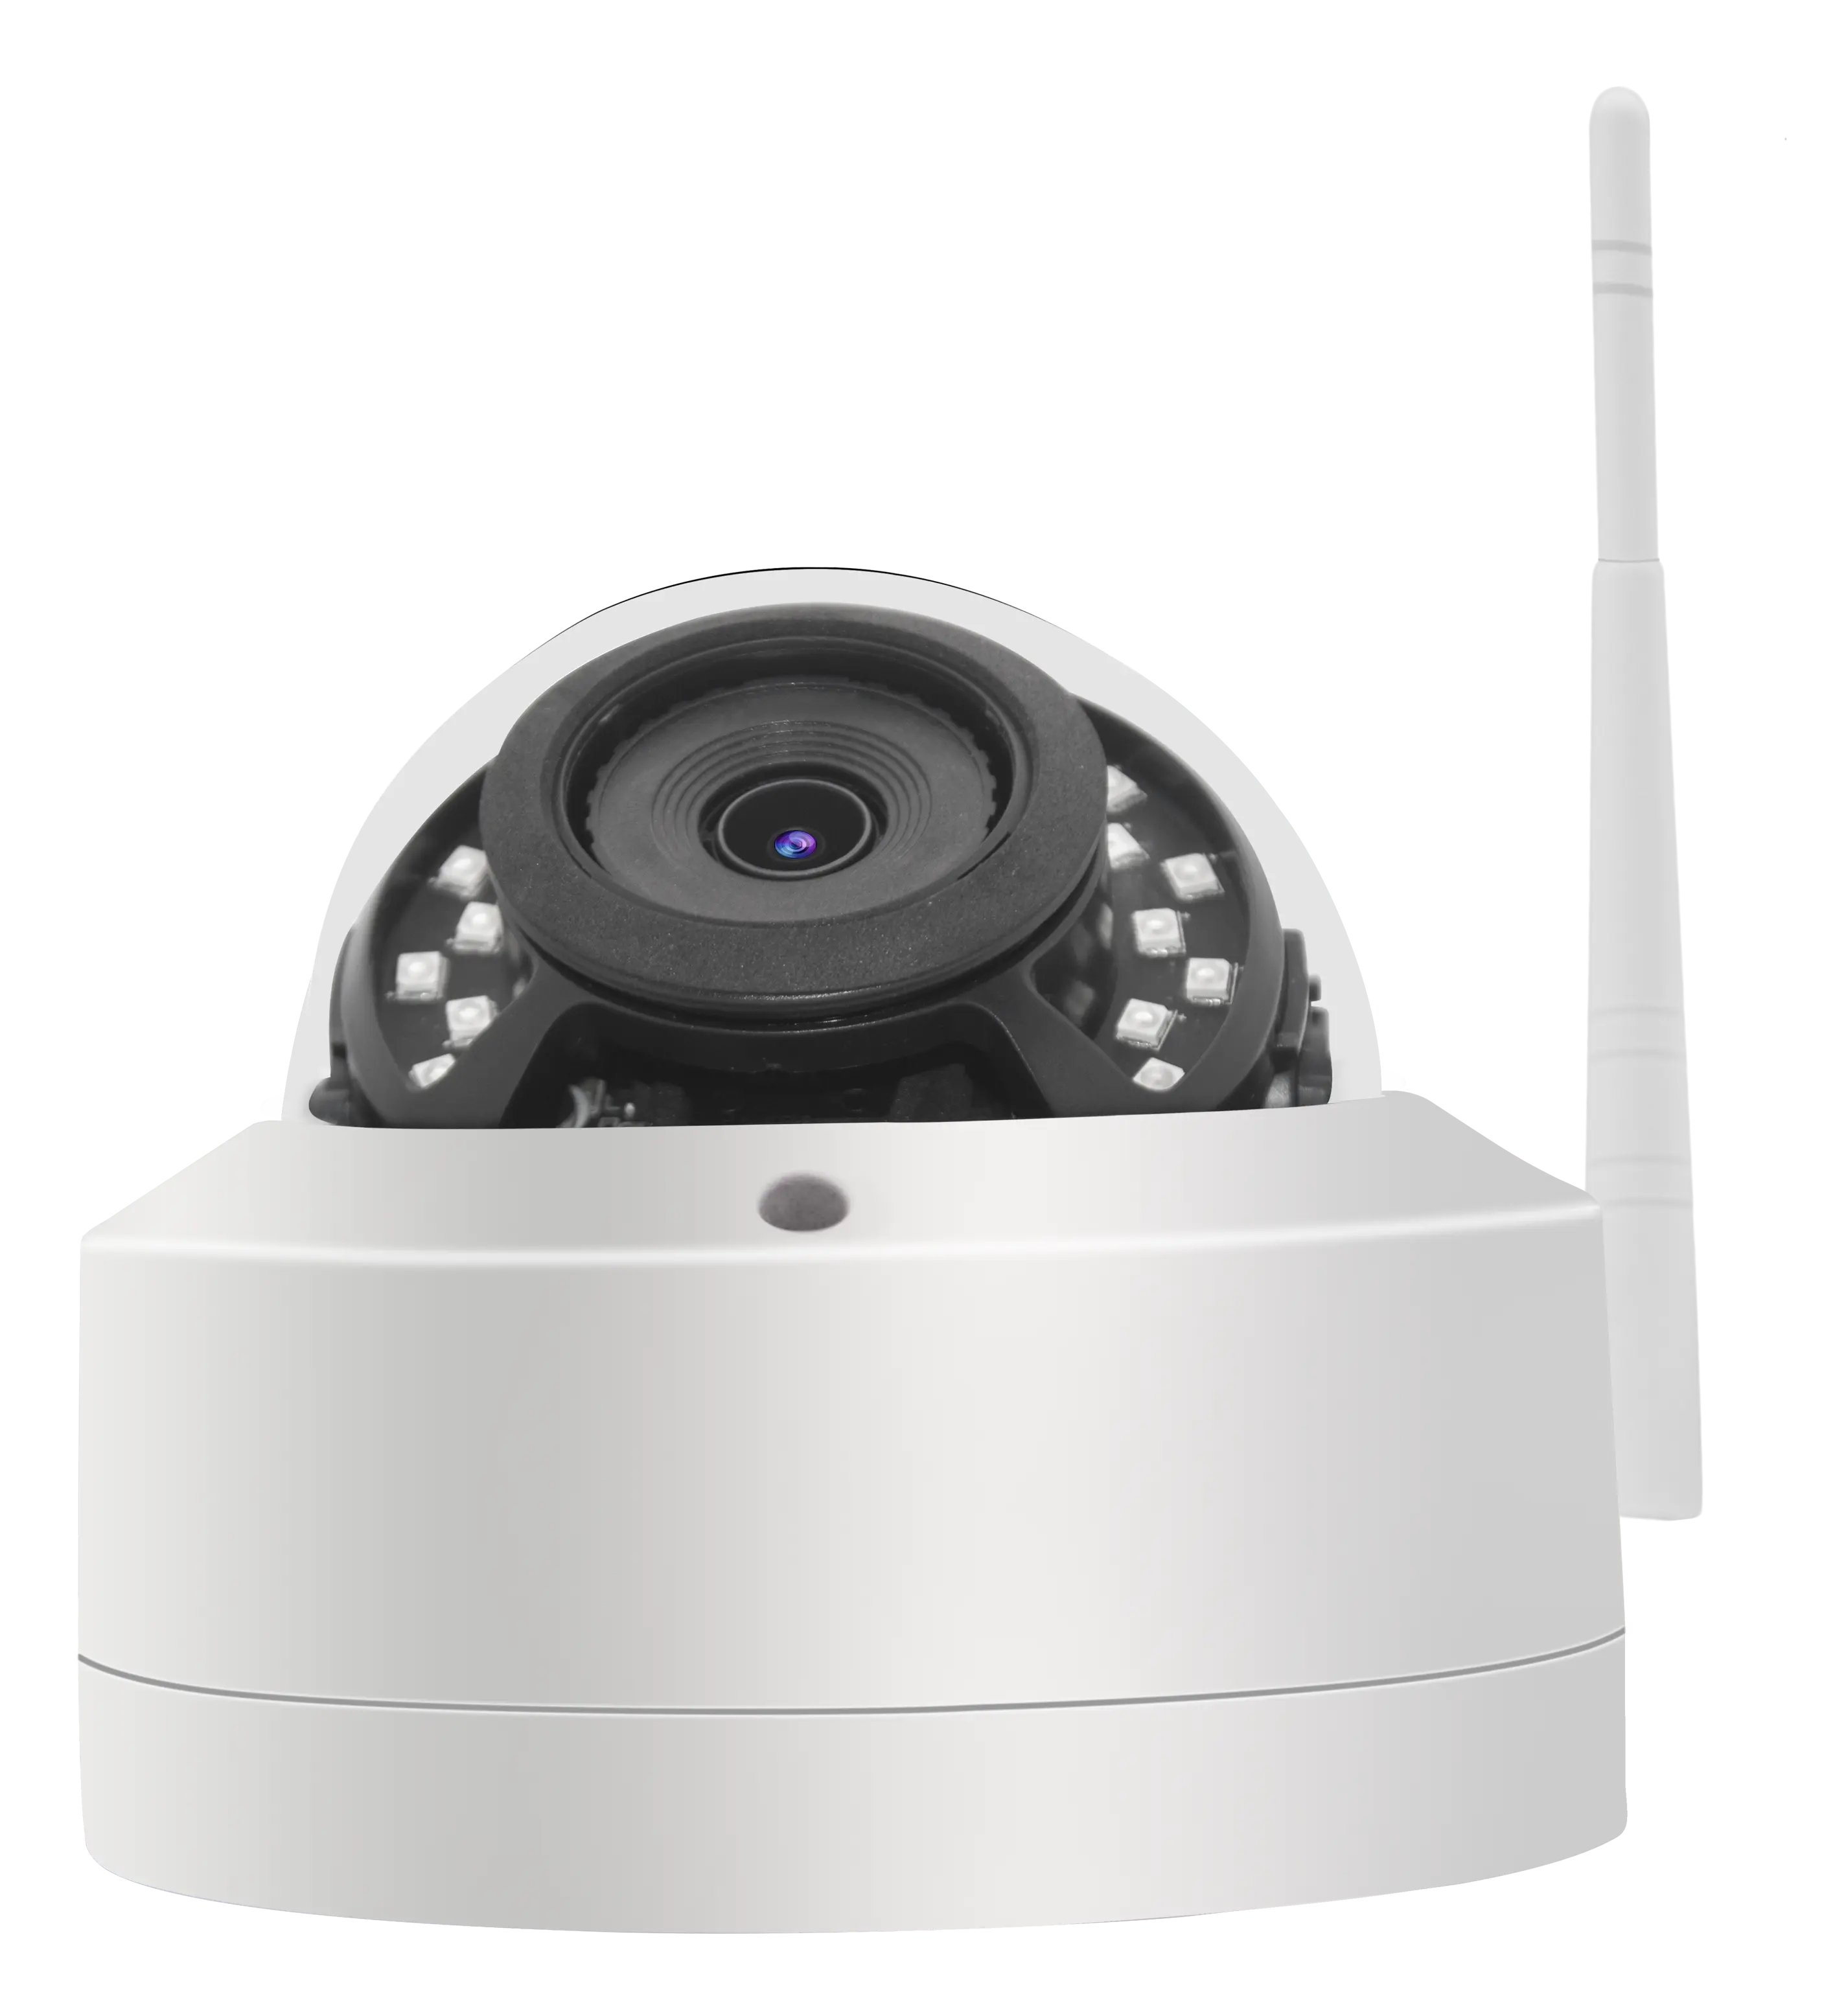 5mp Camhi اللاسلكية واي فاي كاميرا بشكل قبة 2.8 مللي متر مع الصوت في اتجاه واحد ، الكشف عن جسم الإنسان ، دعم 64GB بطاقة الذاكرة الرقمية المؤمنة 2.4G Bgn 3Db هوائي